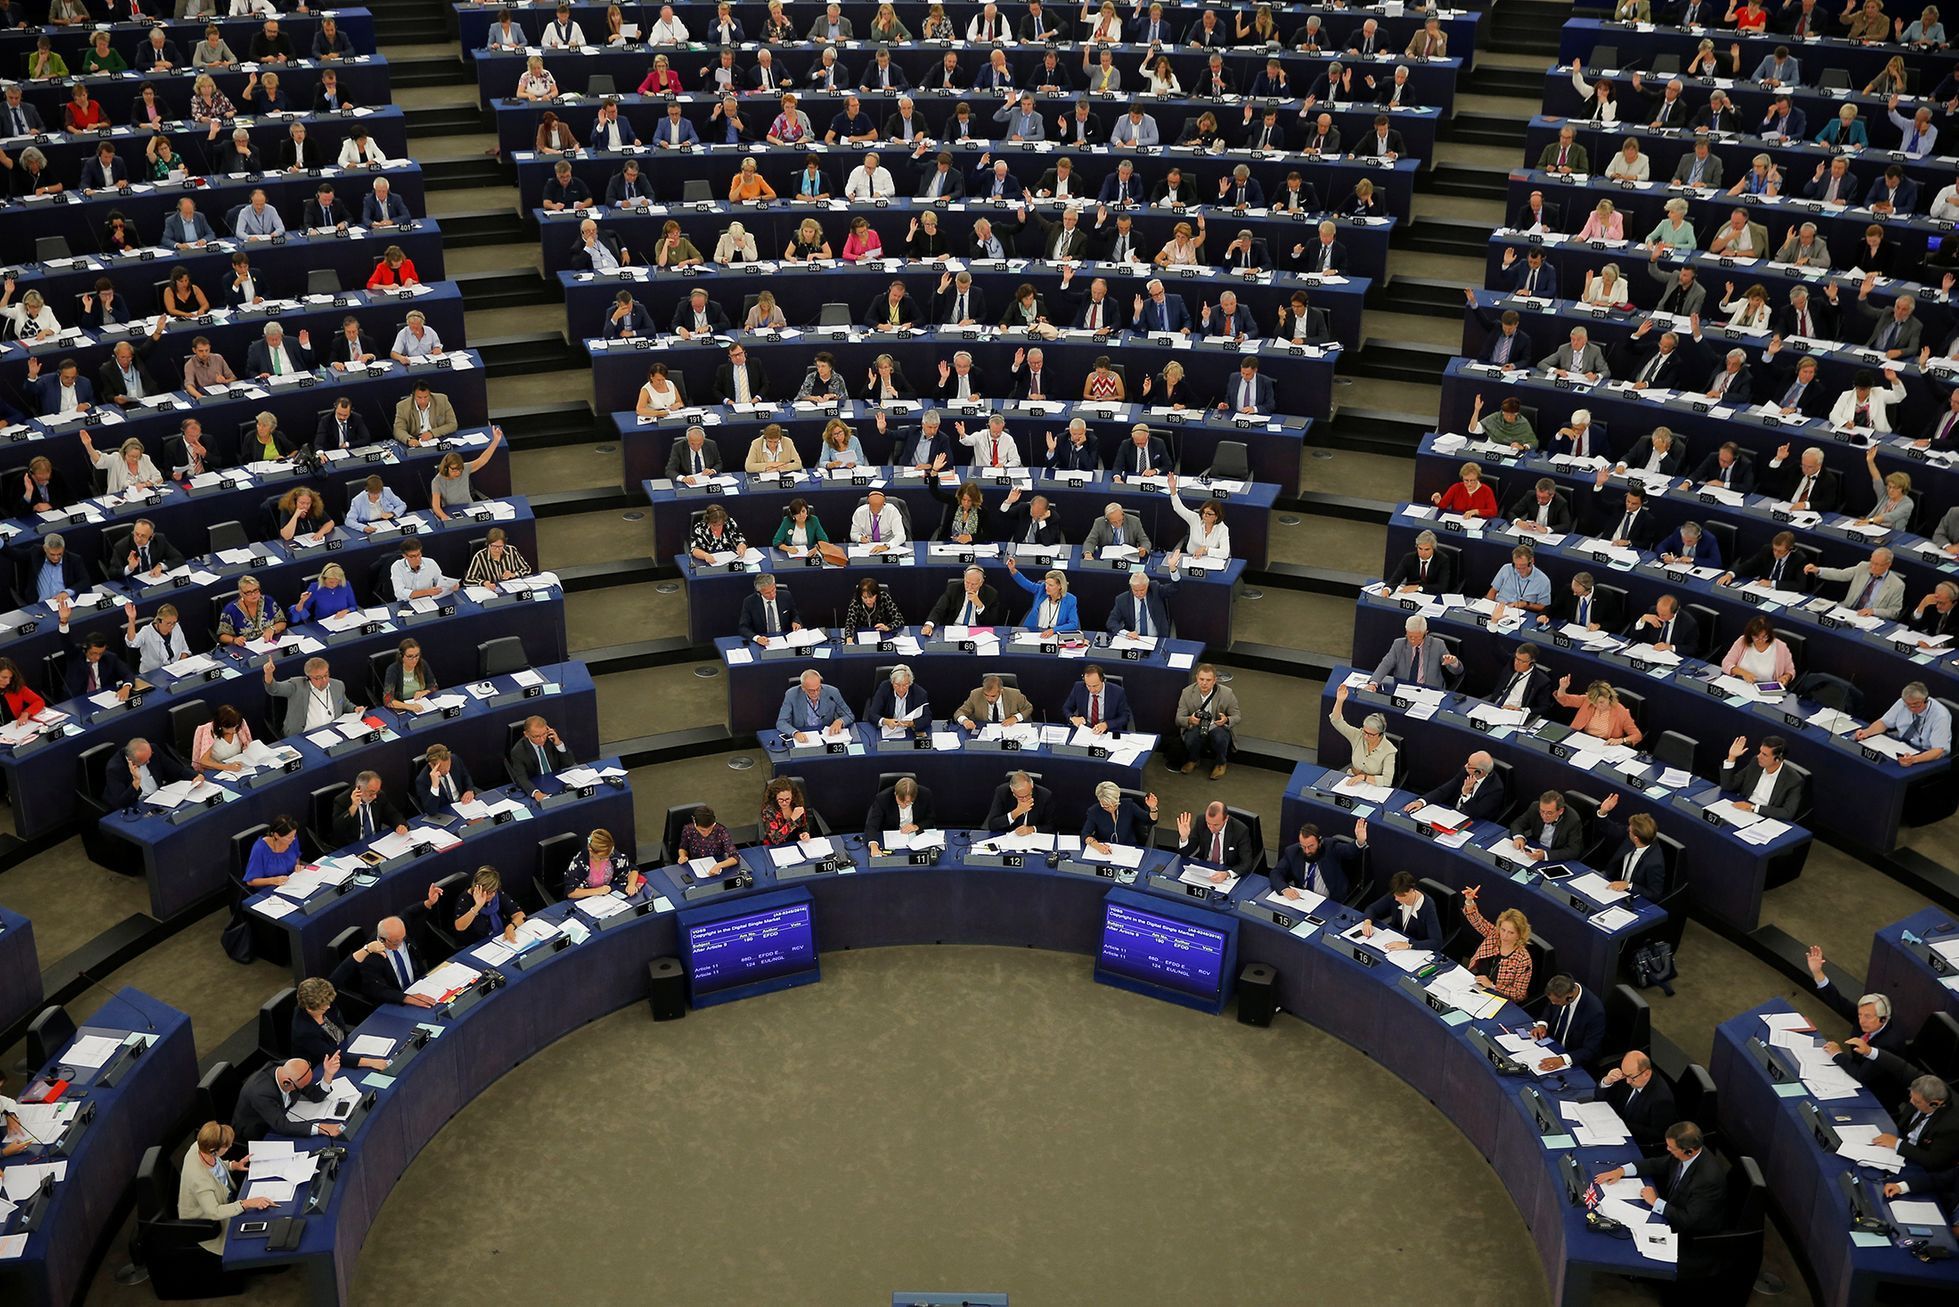 Evropský parlament / Hlasování / Září 2018 / Reuters